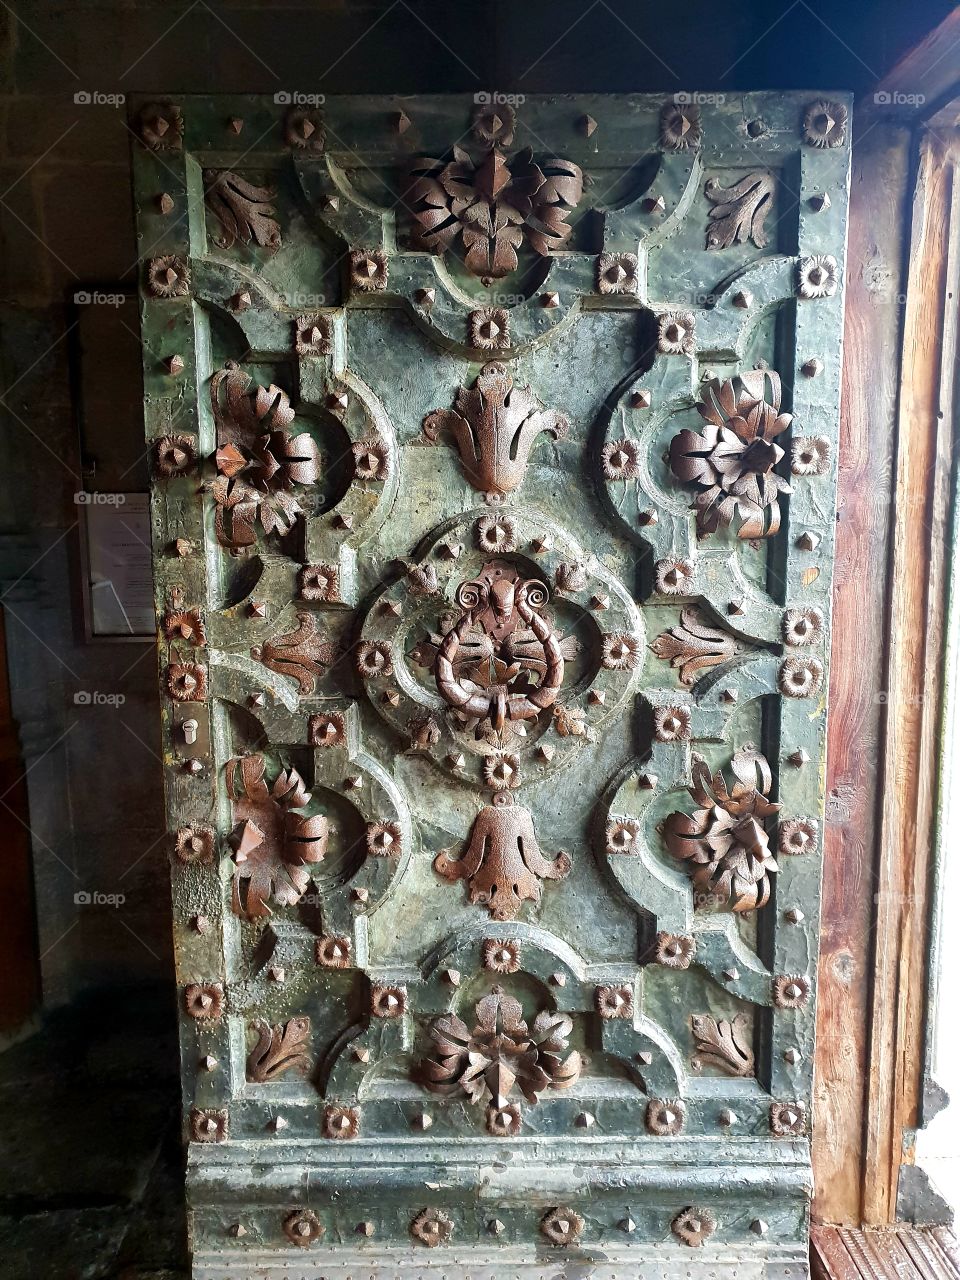 door old